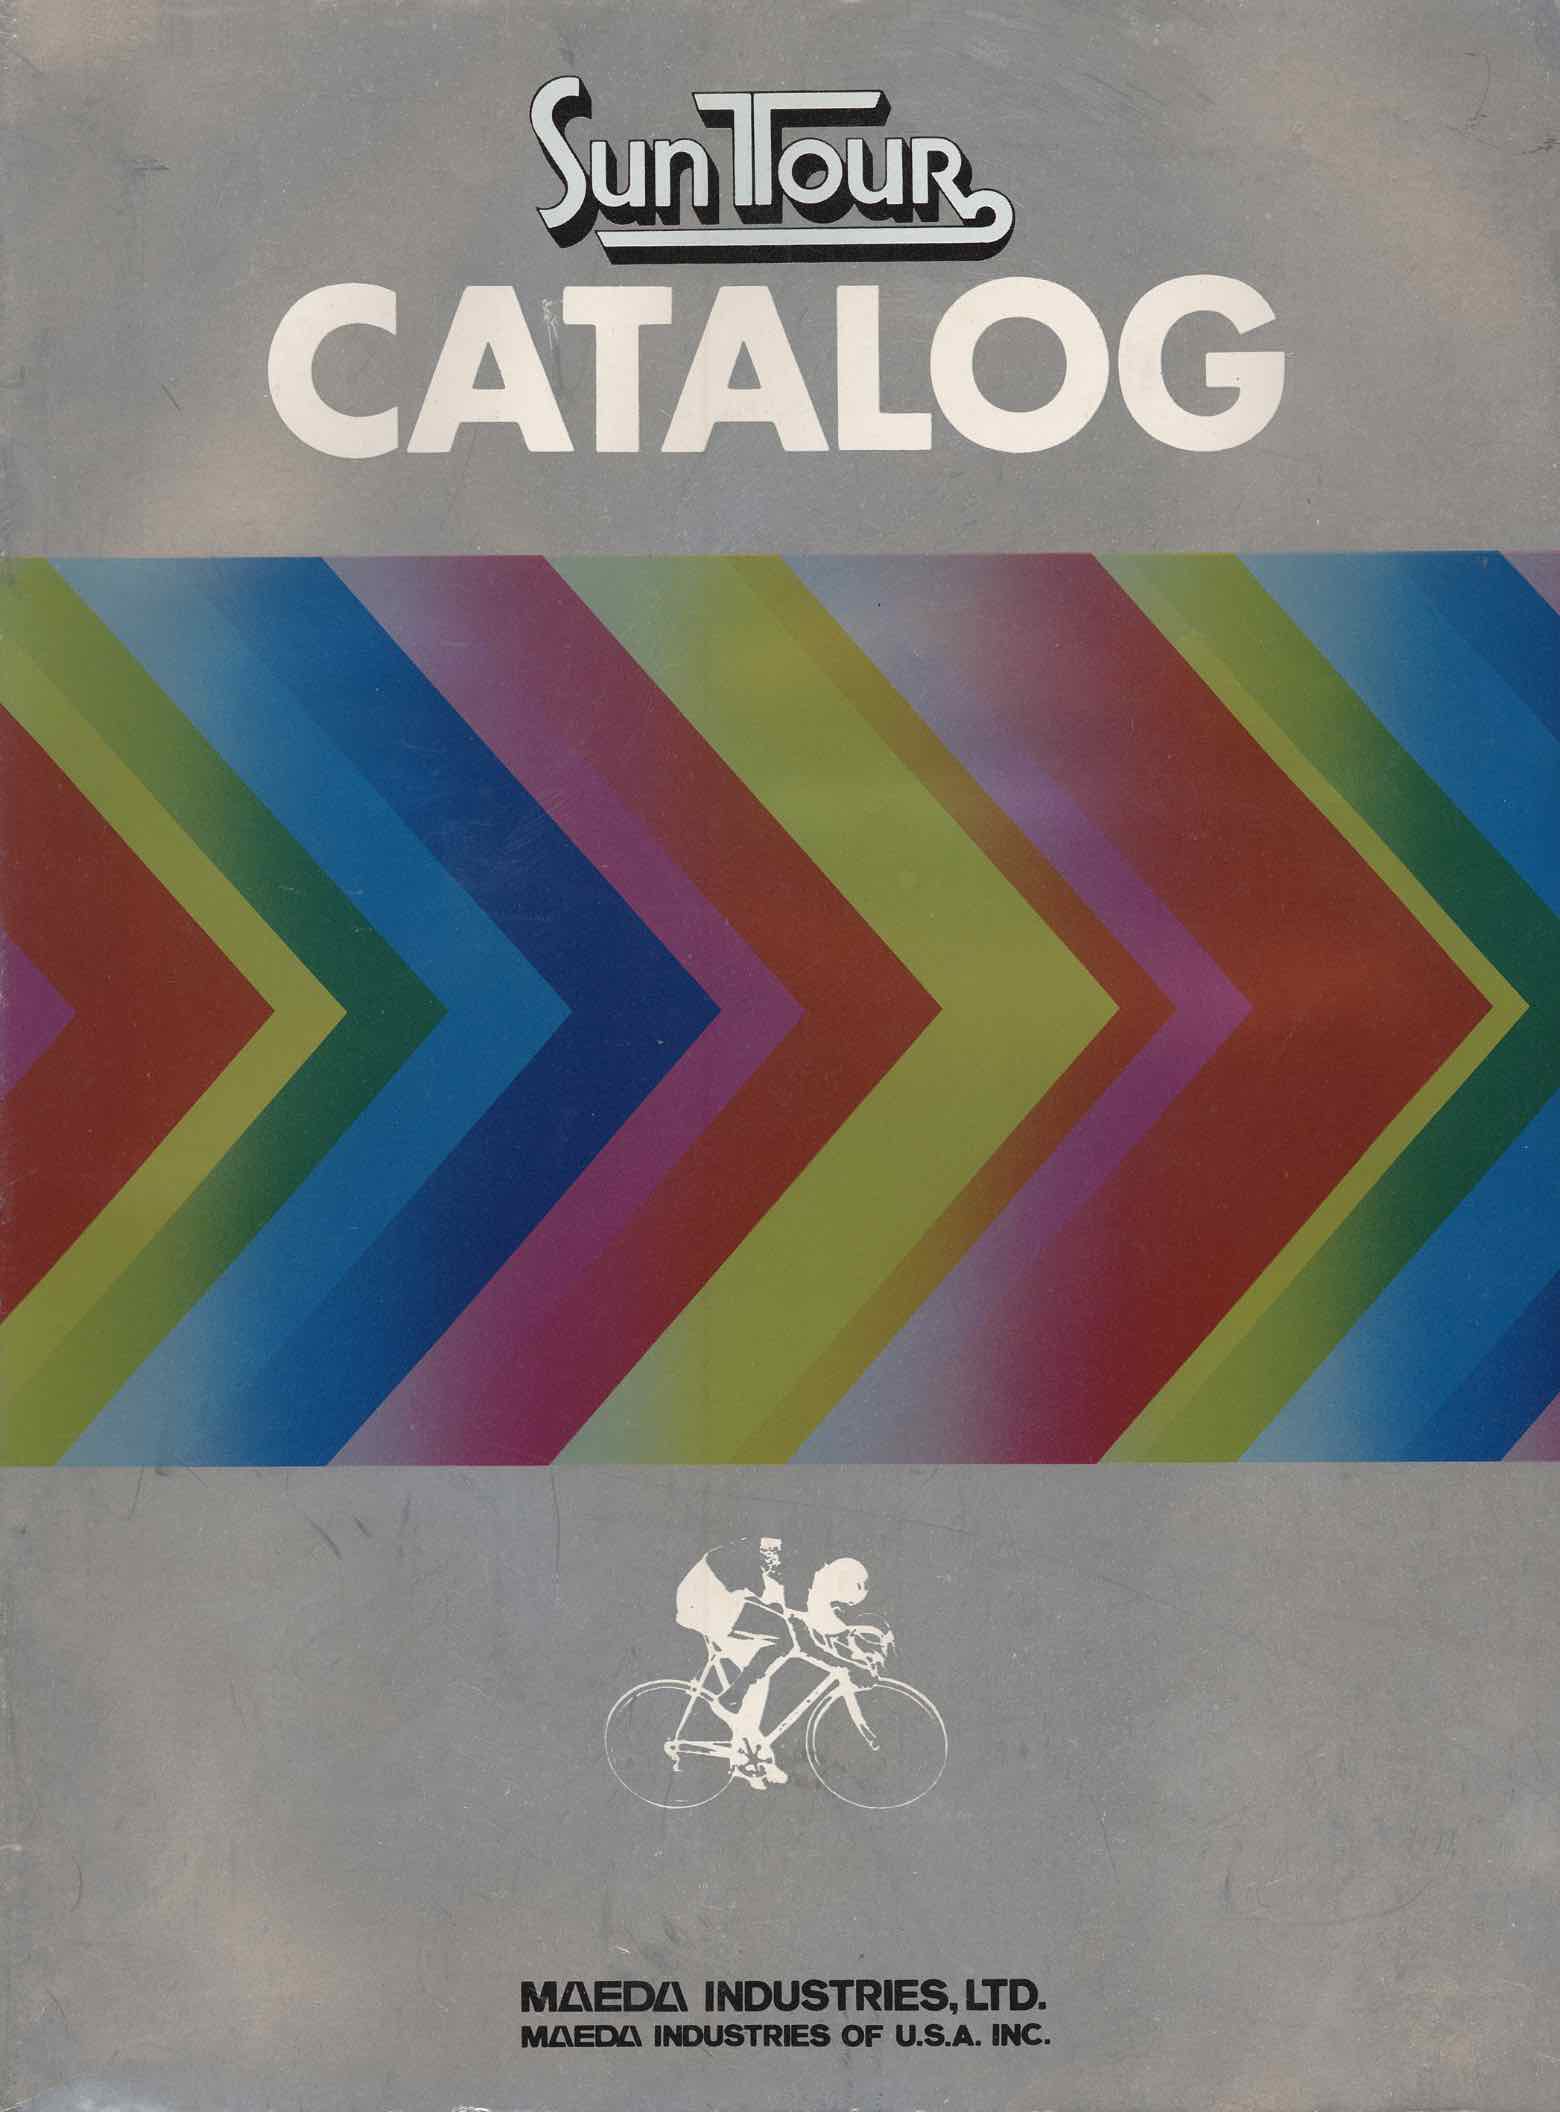 SunTour Catalog (1978) - front cover main image